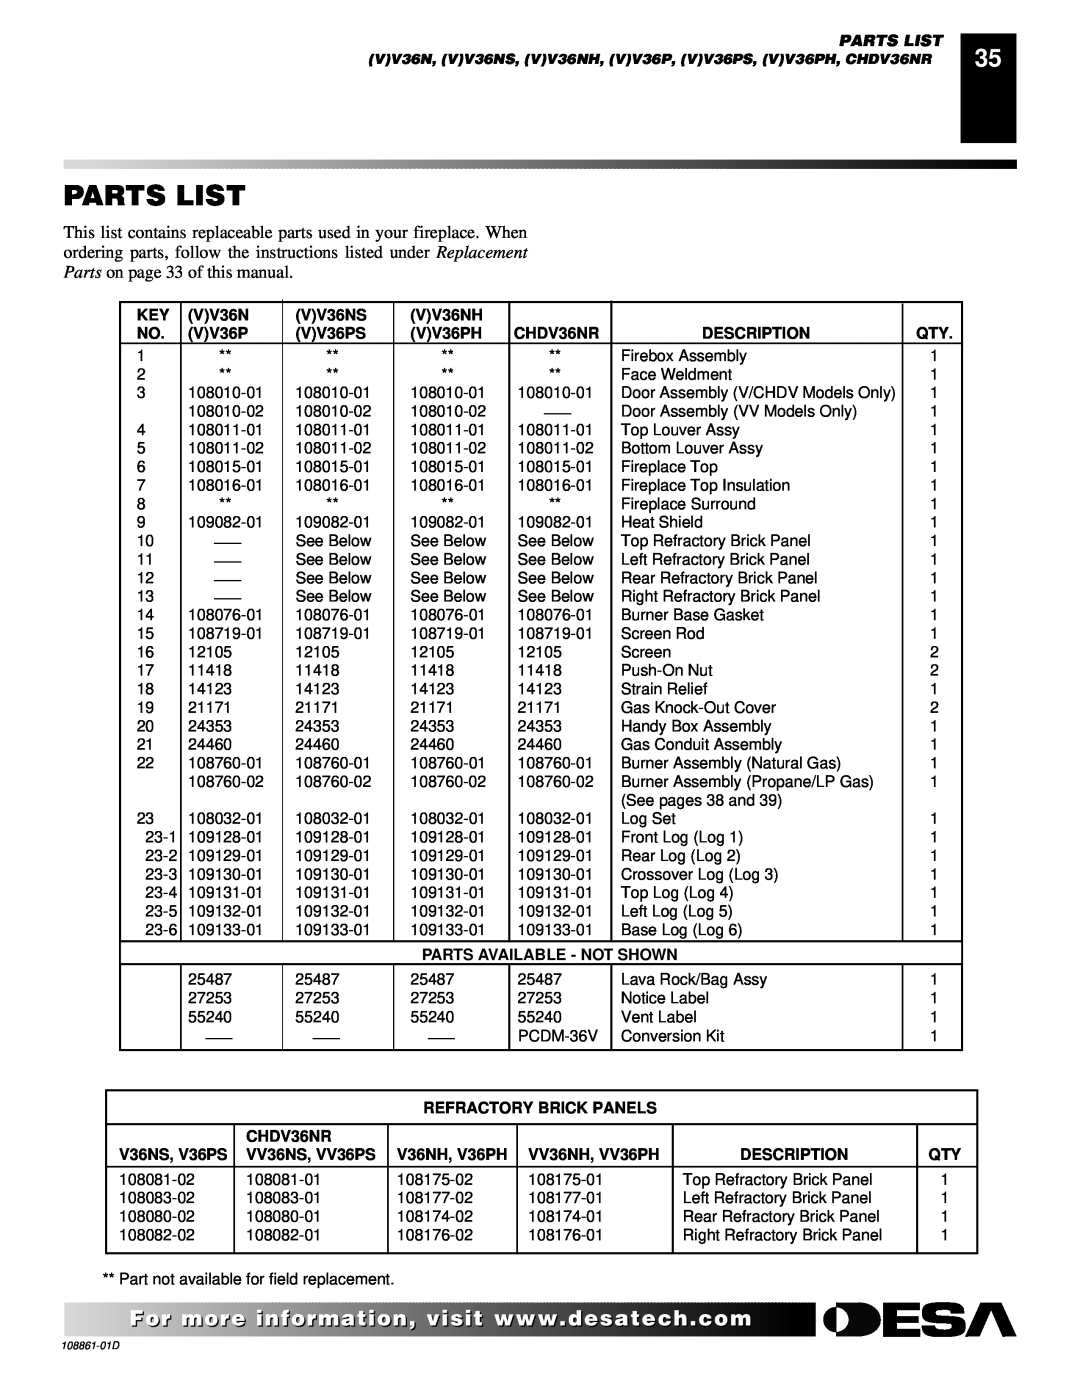 Desa (V)V42P Parts List, VV36NS, VV36NH, VV36PS, VV36PH, CHDV36NR, Description, Parts Available - Not Shown 